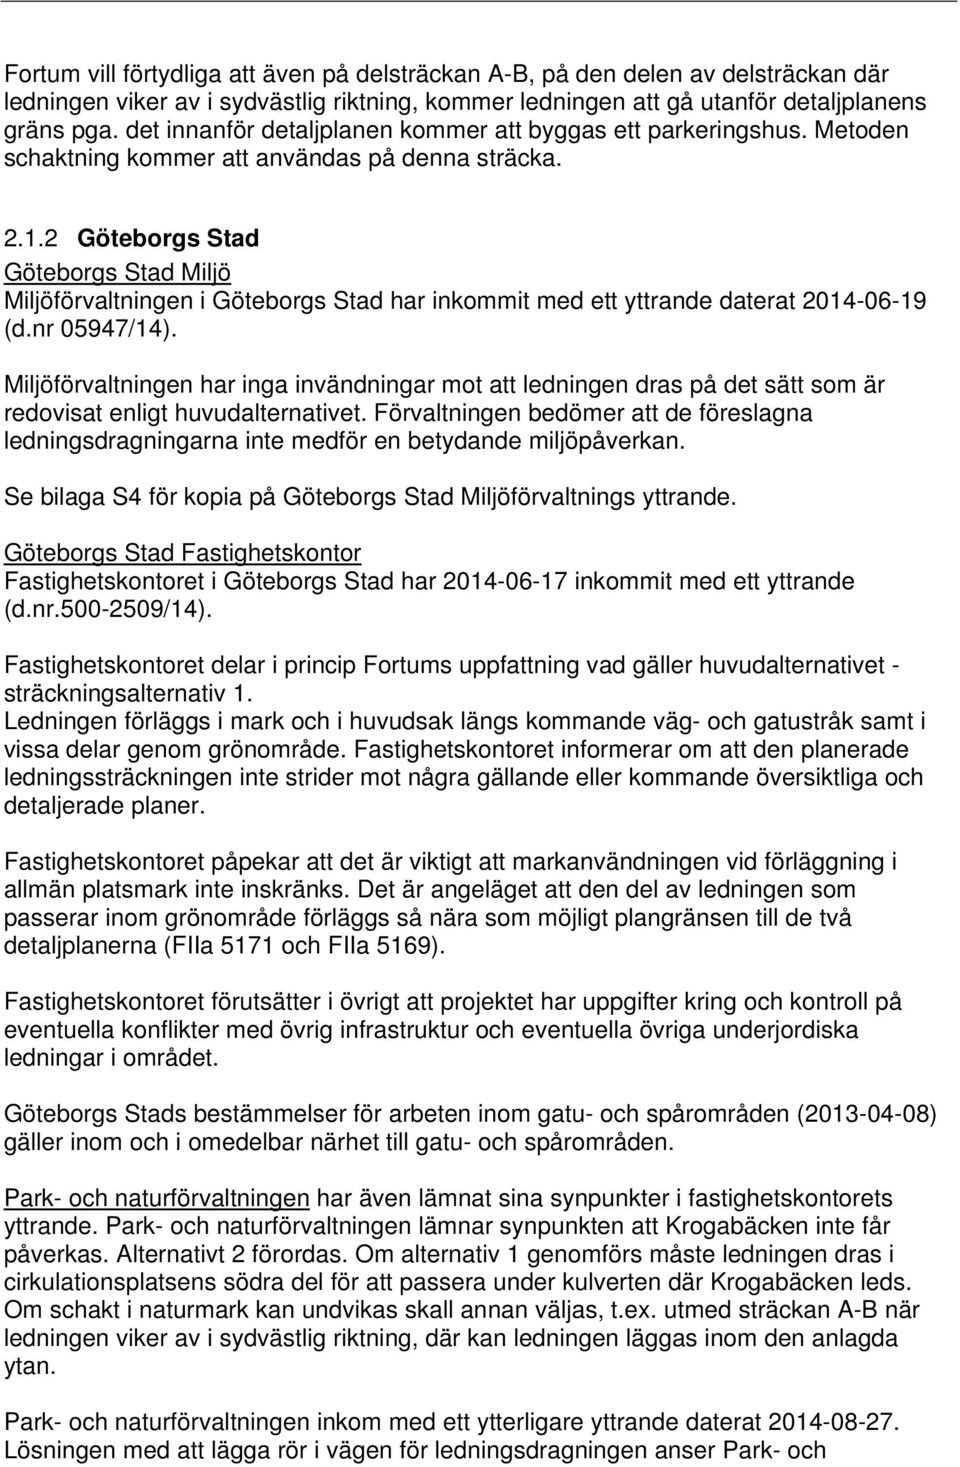 2 Göteborgs Stad Göteborgs Stad Miljö Miljöförvaltningen i Göteborgs Stad har inkommit med ett yttrande daterat 2014-06-19 (d.nr 05947/14).